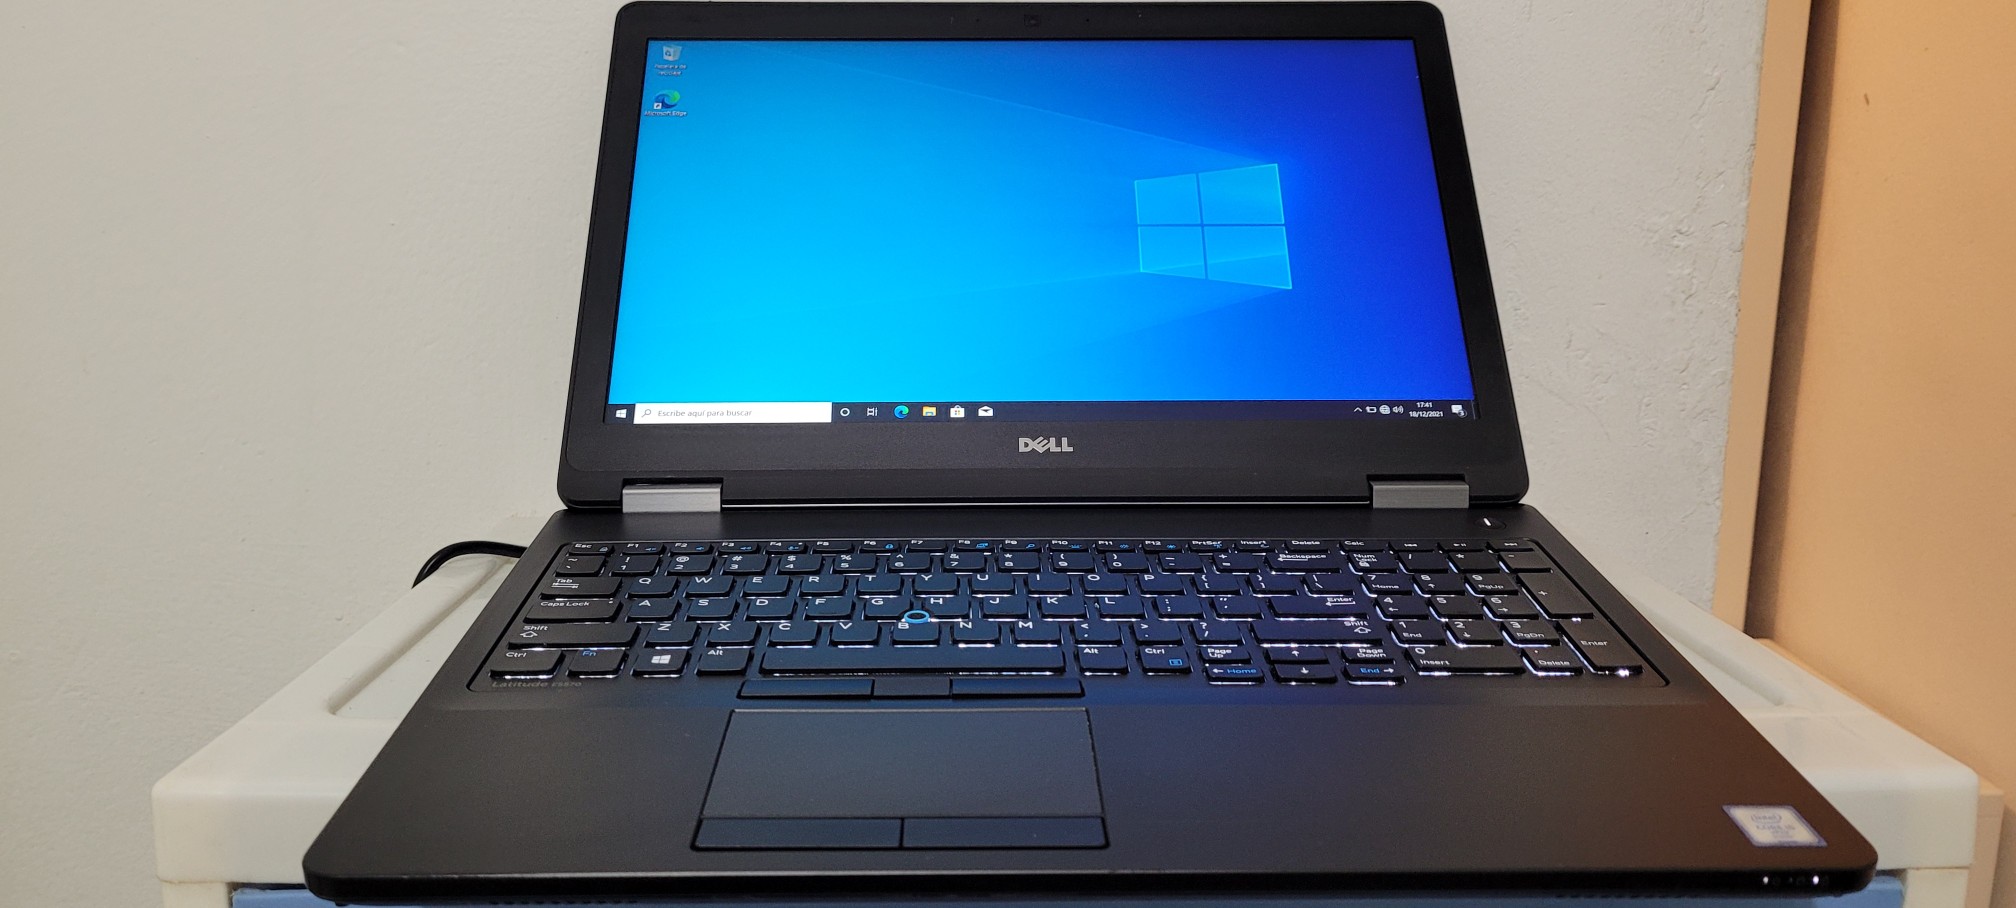 computadoras y laptops - Dell 5570 17 Pulg Core i5 6ta Ram 8gb ddr4 Disco 128gb Y 500gb Full 0